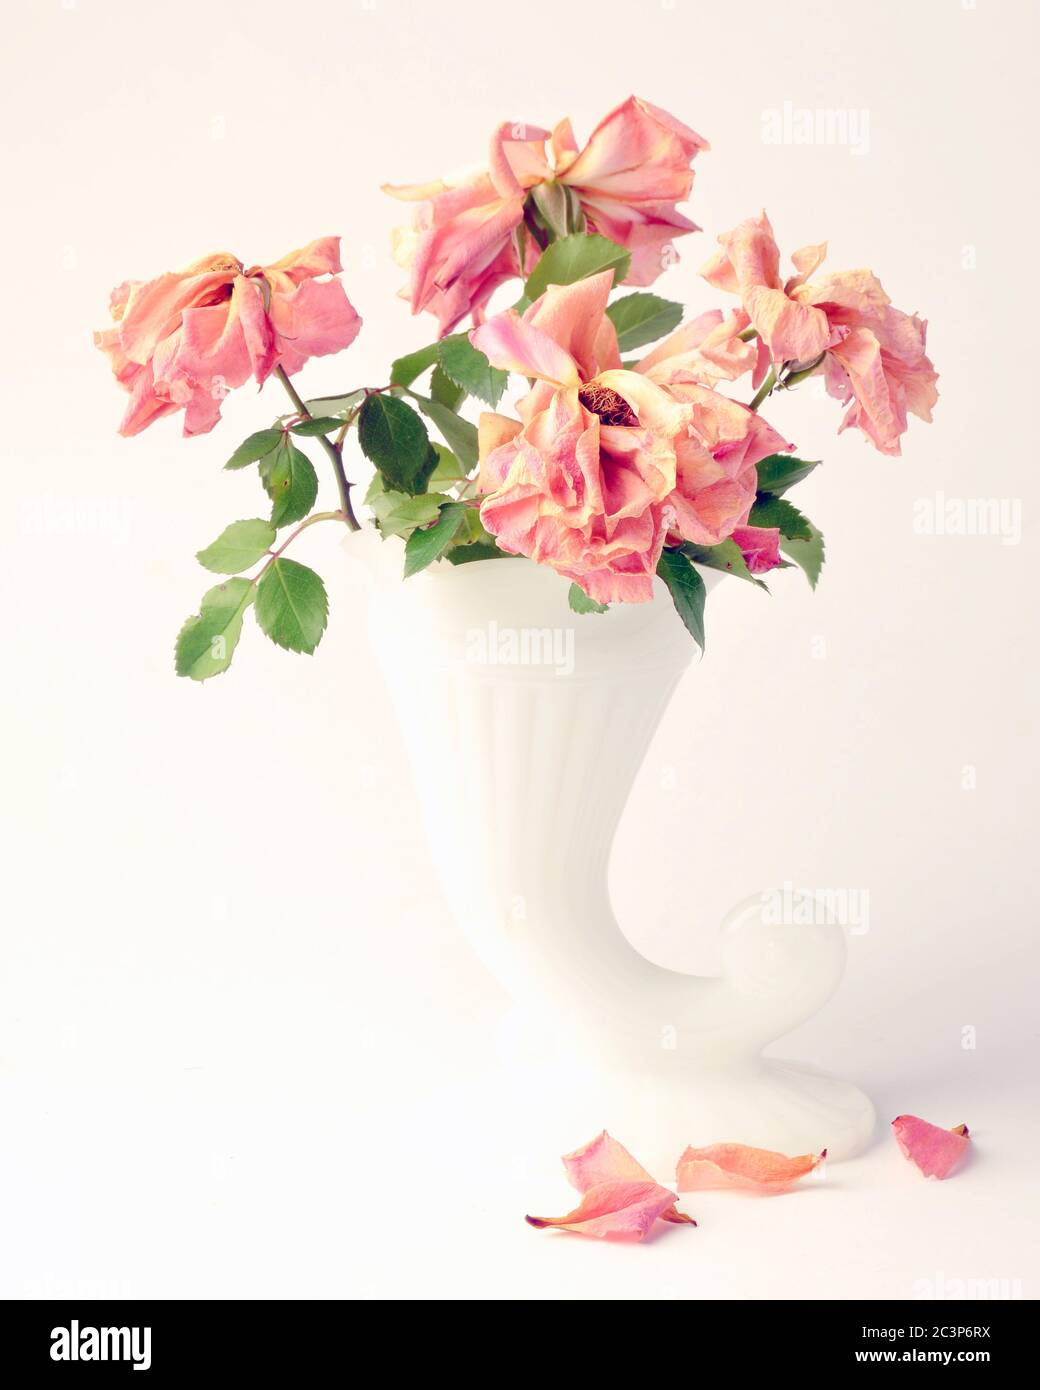 Rosas muertas en jarrón blanco, con flores de color amarillo, naranja rosa estudio sobre fondo blanco Foto de stock